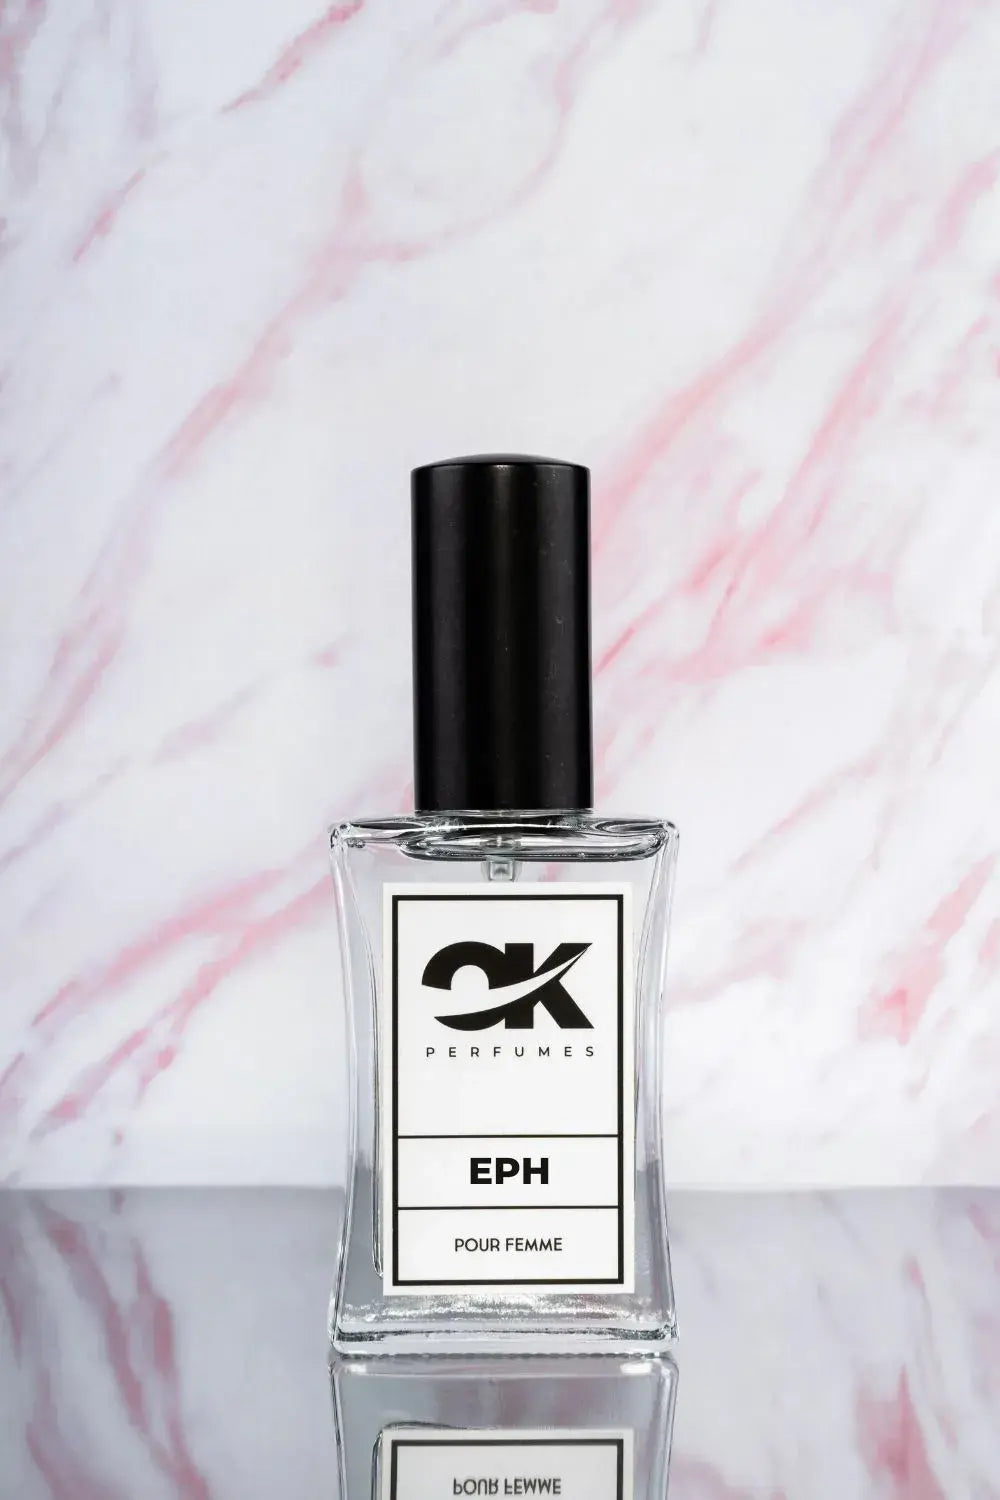 EPH - Recuerda a Euphoria de Calvin Klein